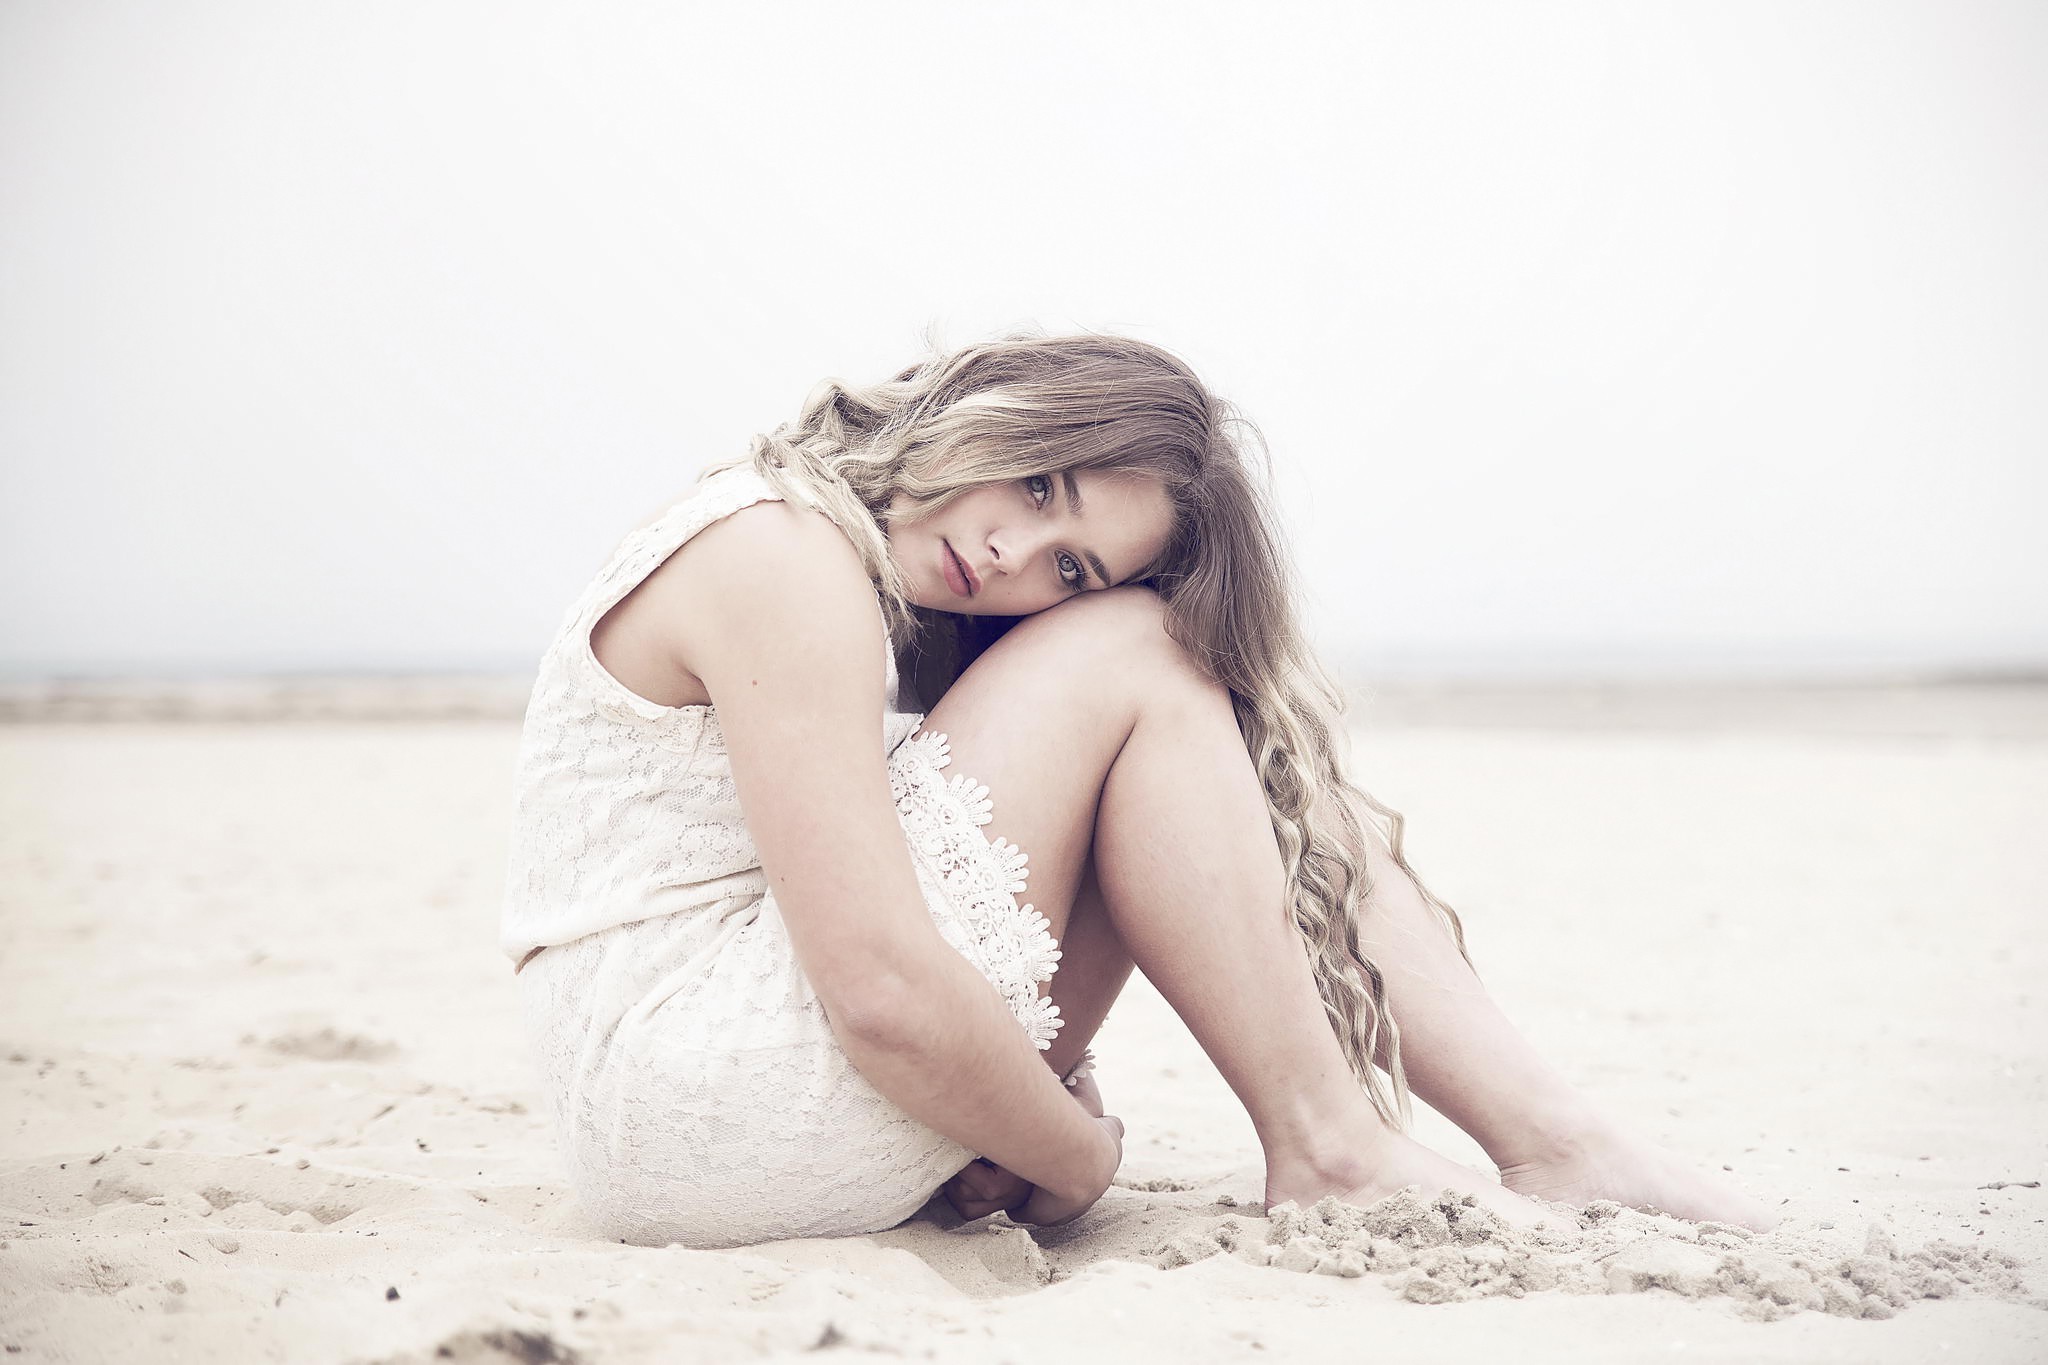 Пляжный песок прилипает к телу молодой девки Holly Anderson